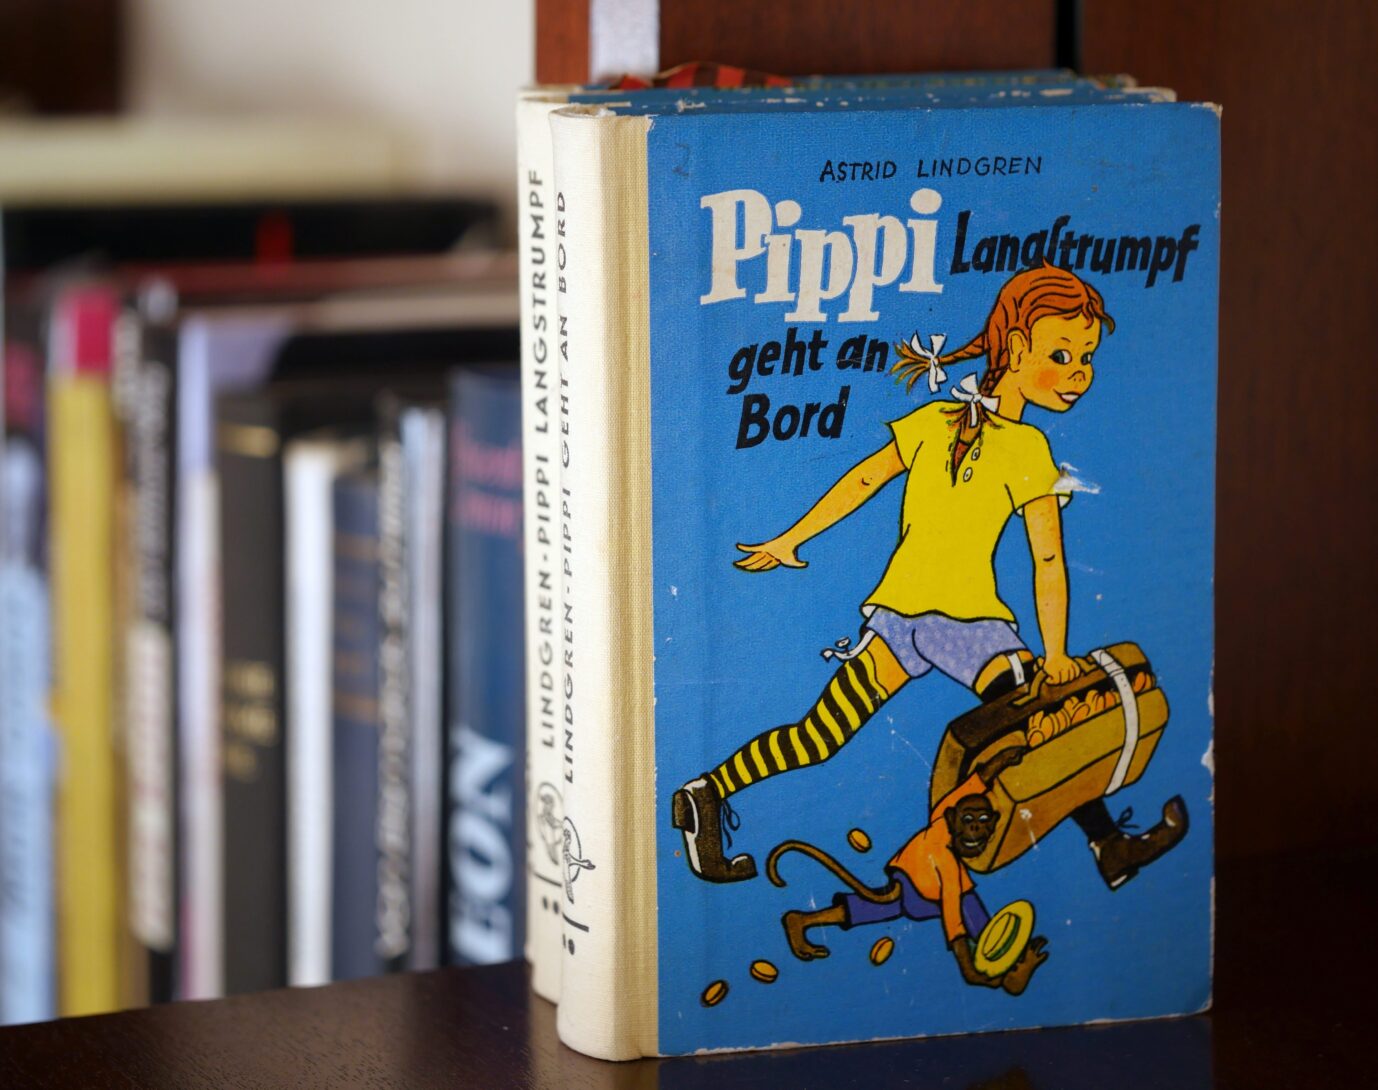 Kinderbücher wie "Pipi Langstrumpf" von Astrid Lindgren sind in unzensierter Version eine Alternative zu woker Literatur.